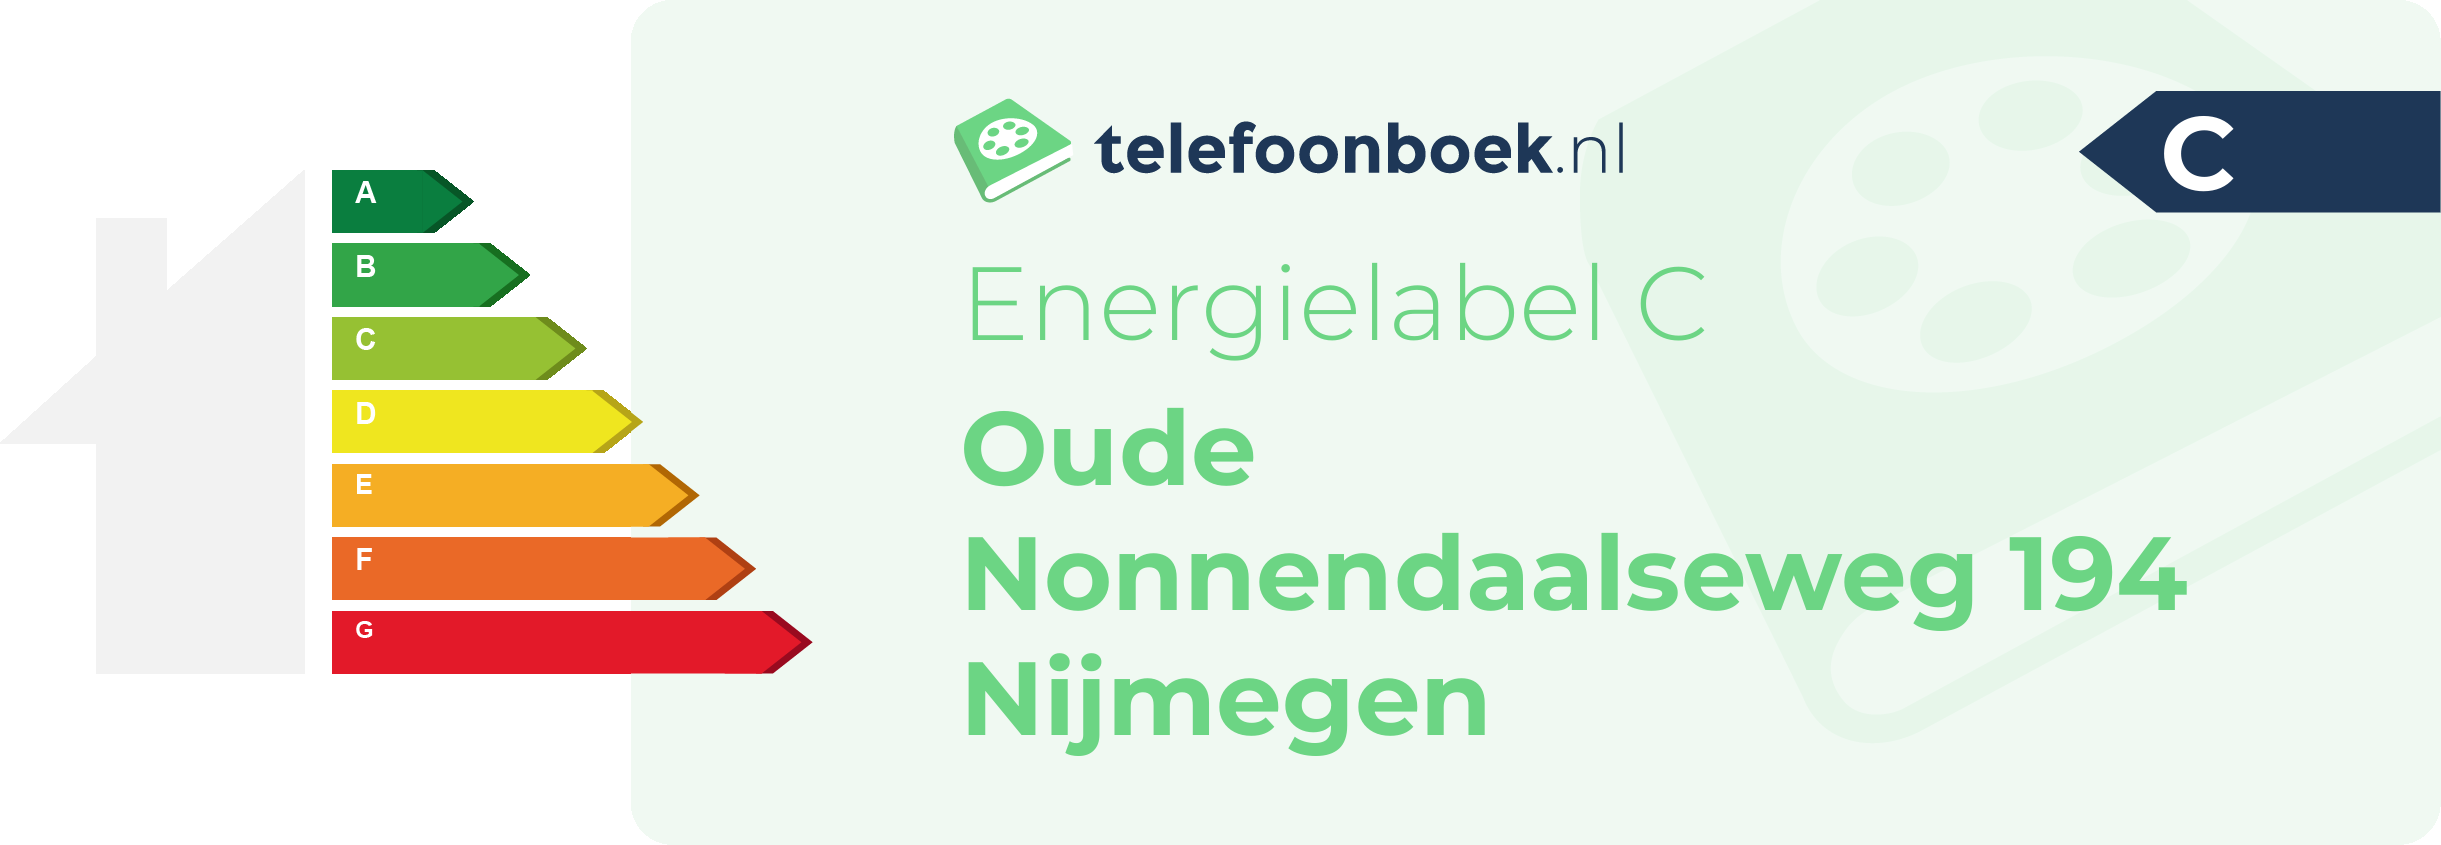 Energielabel Oude Nonnendaalseweg 194 Nijmegen